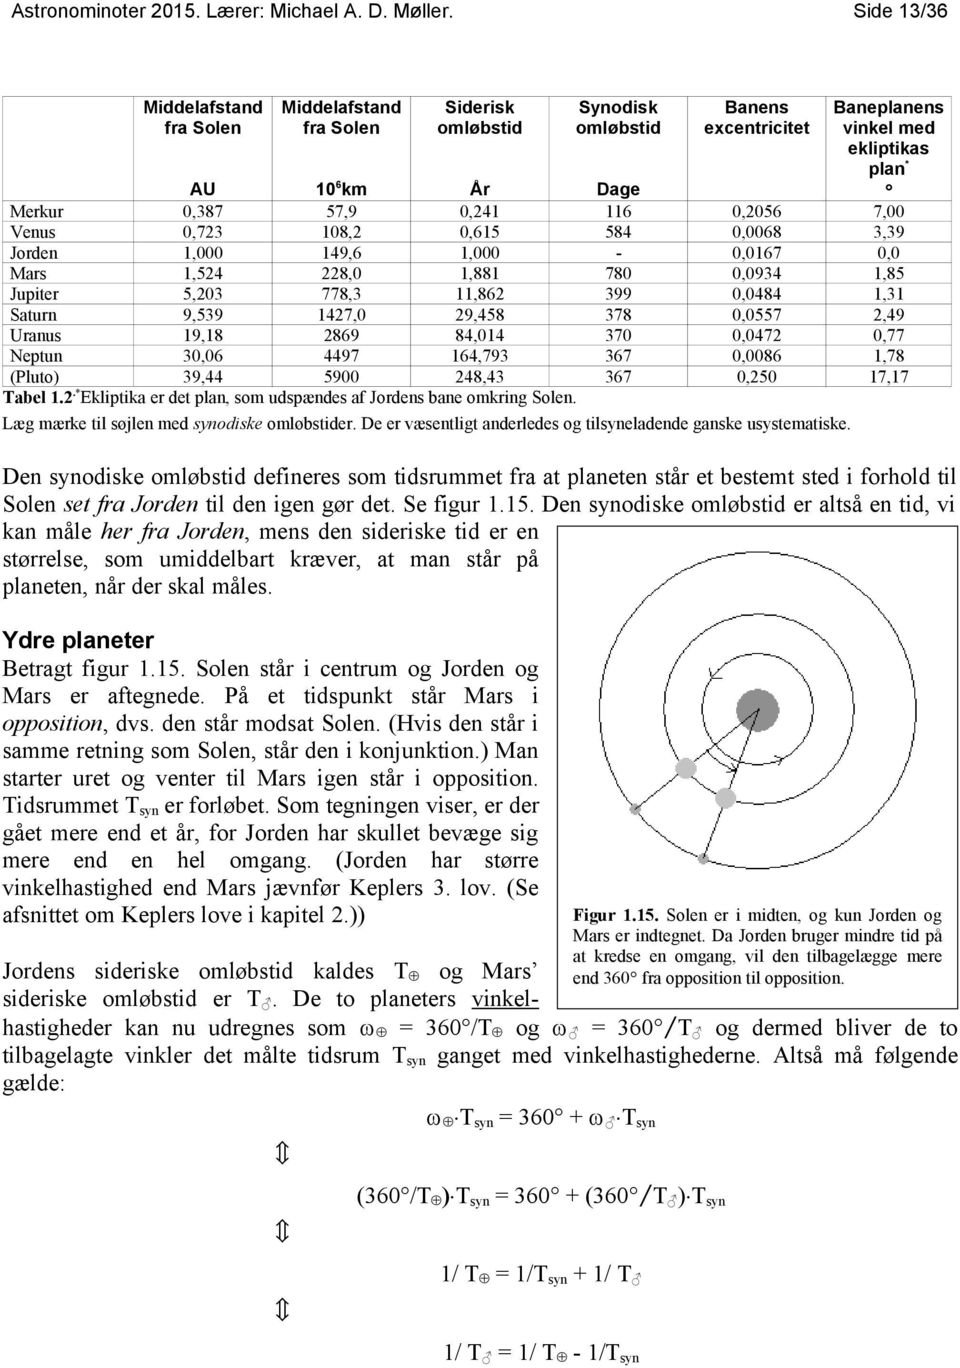 Saturn 9,539 1427,0 29,458 378 0,0557 Uranus 19,18 2869 84,014 370 0,0472 Neptun 30,06 4497 164,793 367 0,0086 (Pluto) 39,44 5900 248,43 367 0,250 Tabel 1.2.*Ekliptika er det plan, som udspændes af Jordens bane omkring Solen.